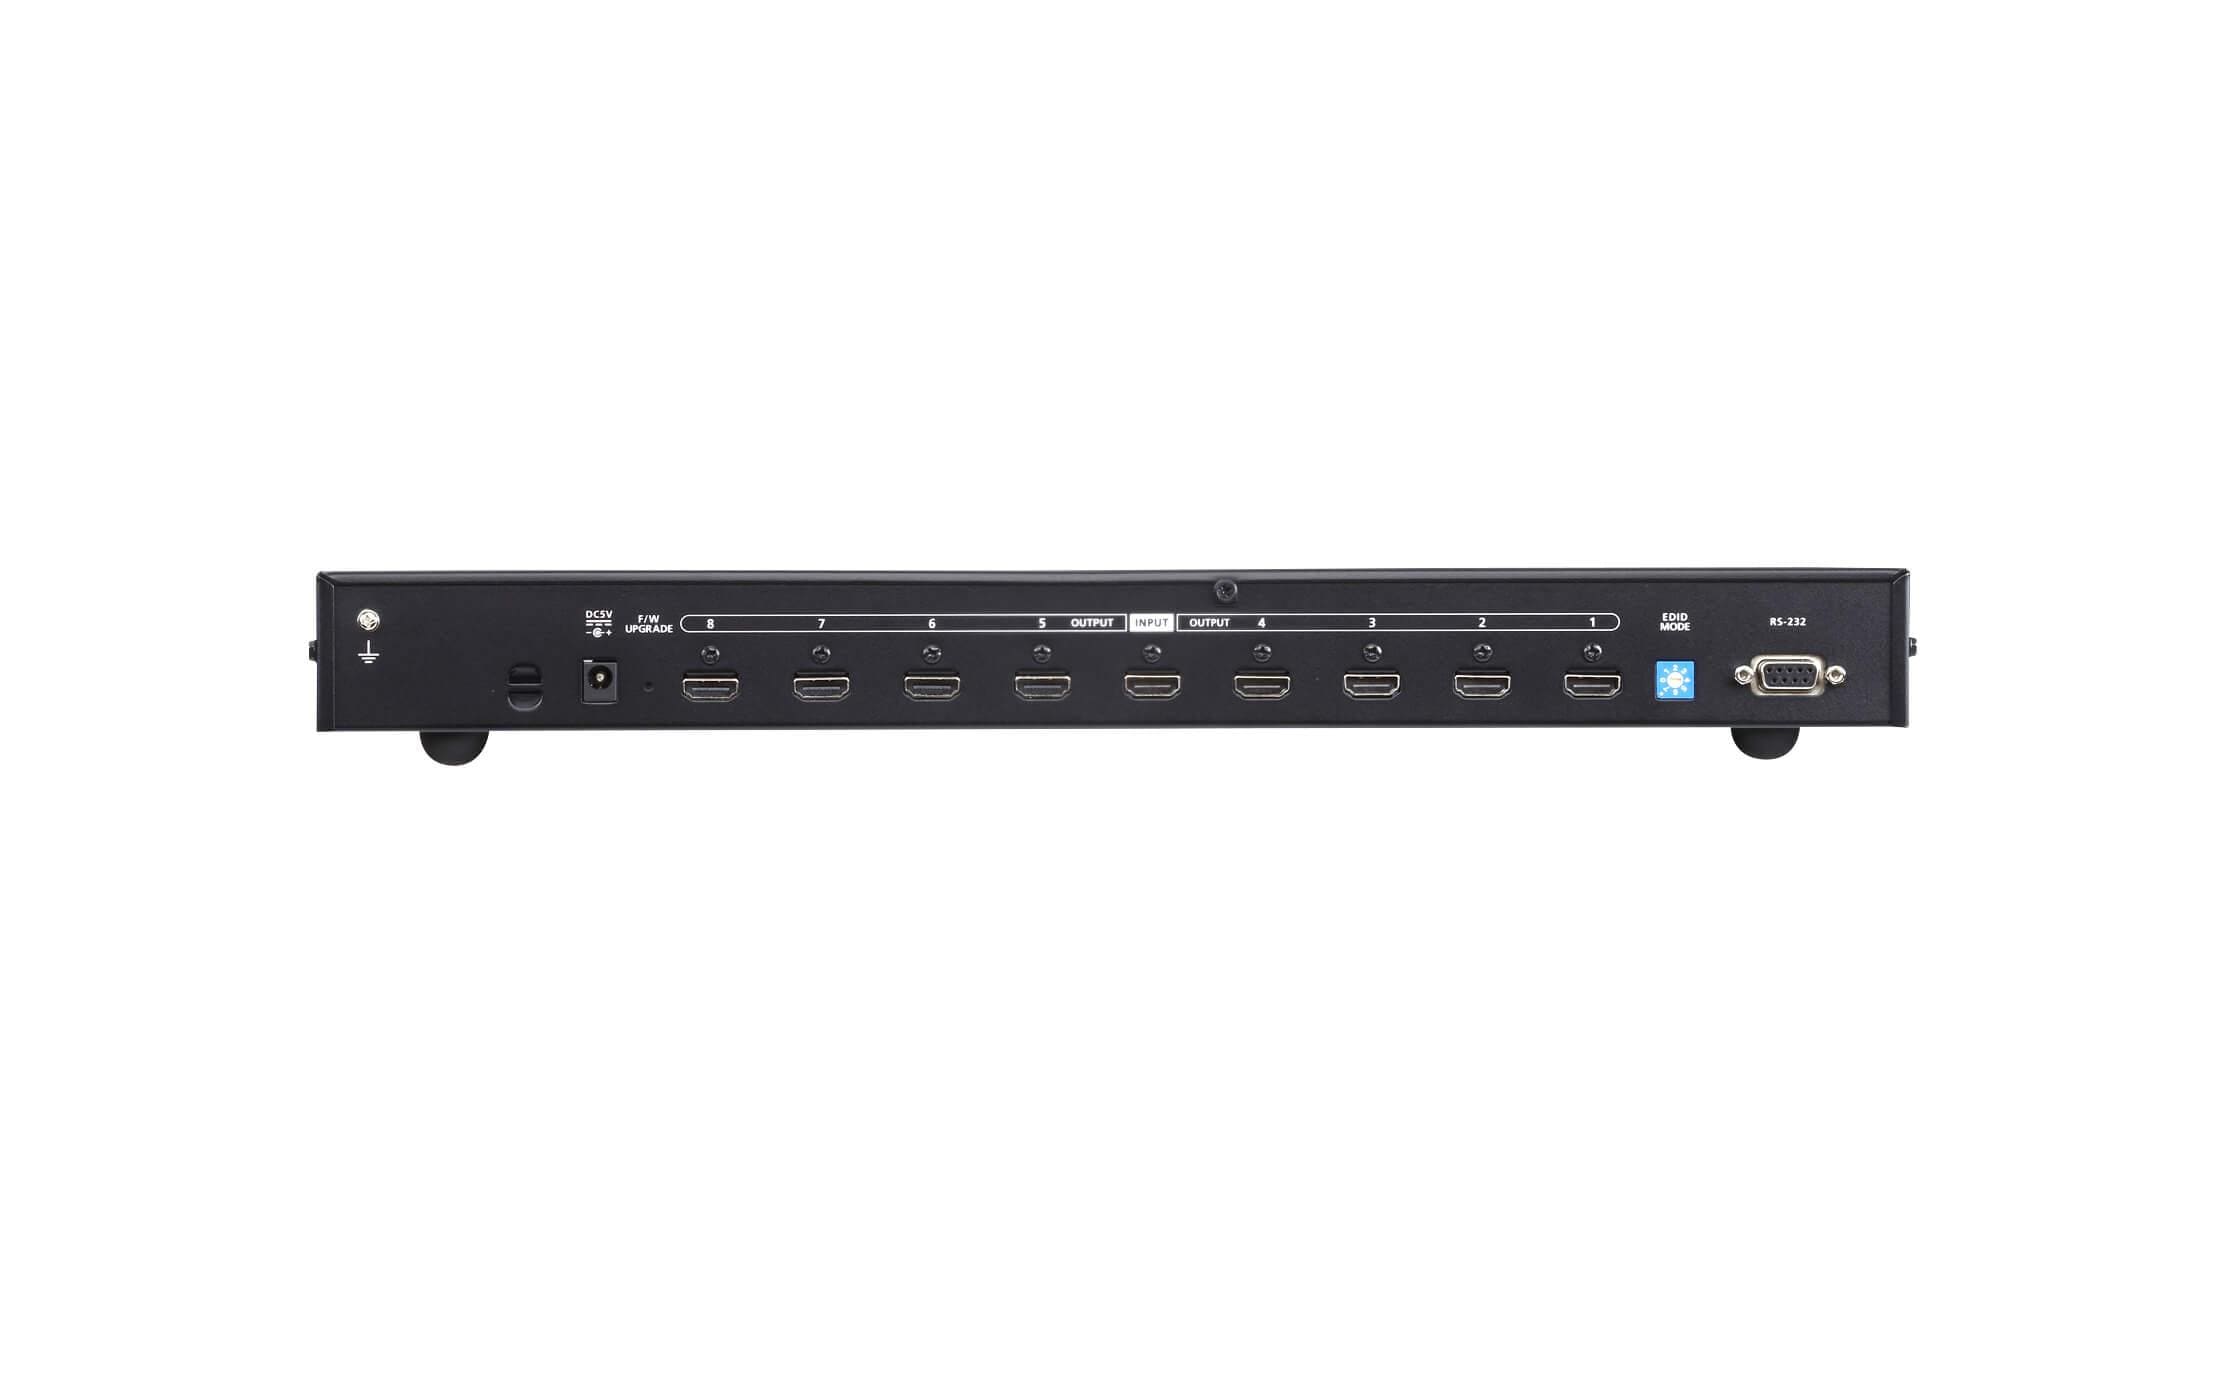 Aten 8-Port Signalsplitter VS0108HB True 4K HDMI